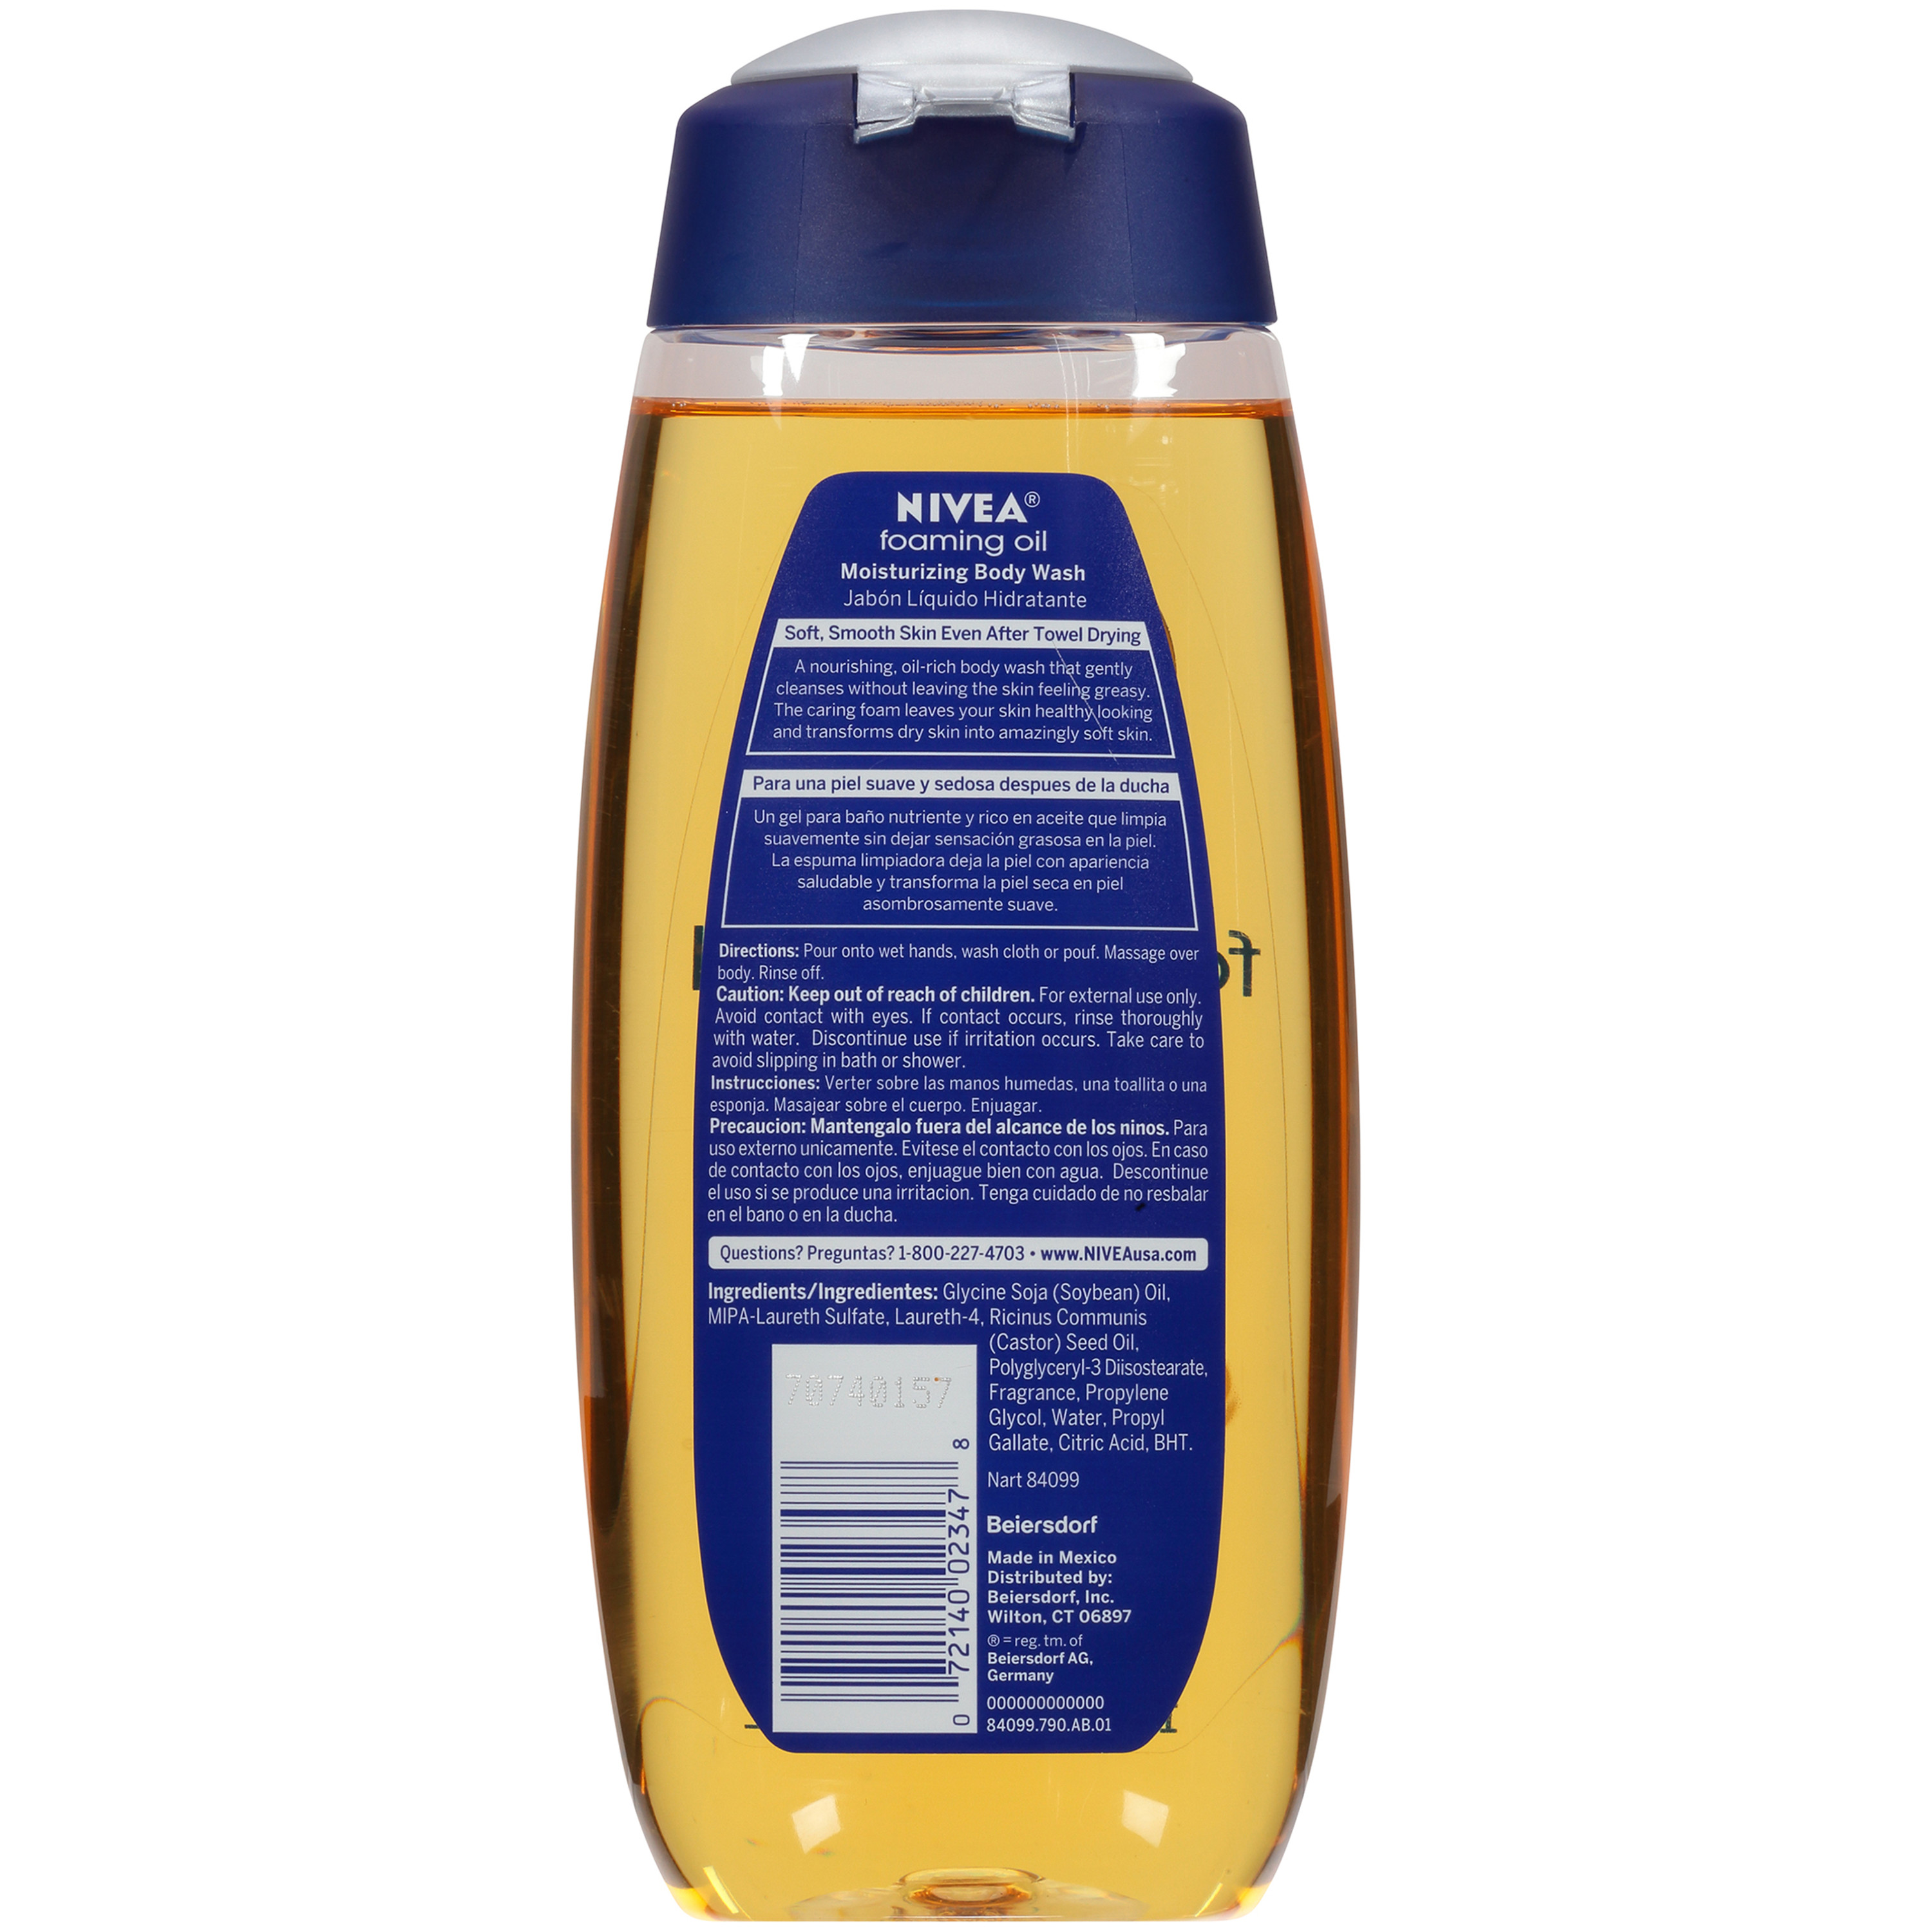 NIVEA Foaming Oil Moisturizing Body Wash 13.5 oz. Bottle - image 3 of 3